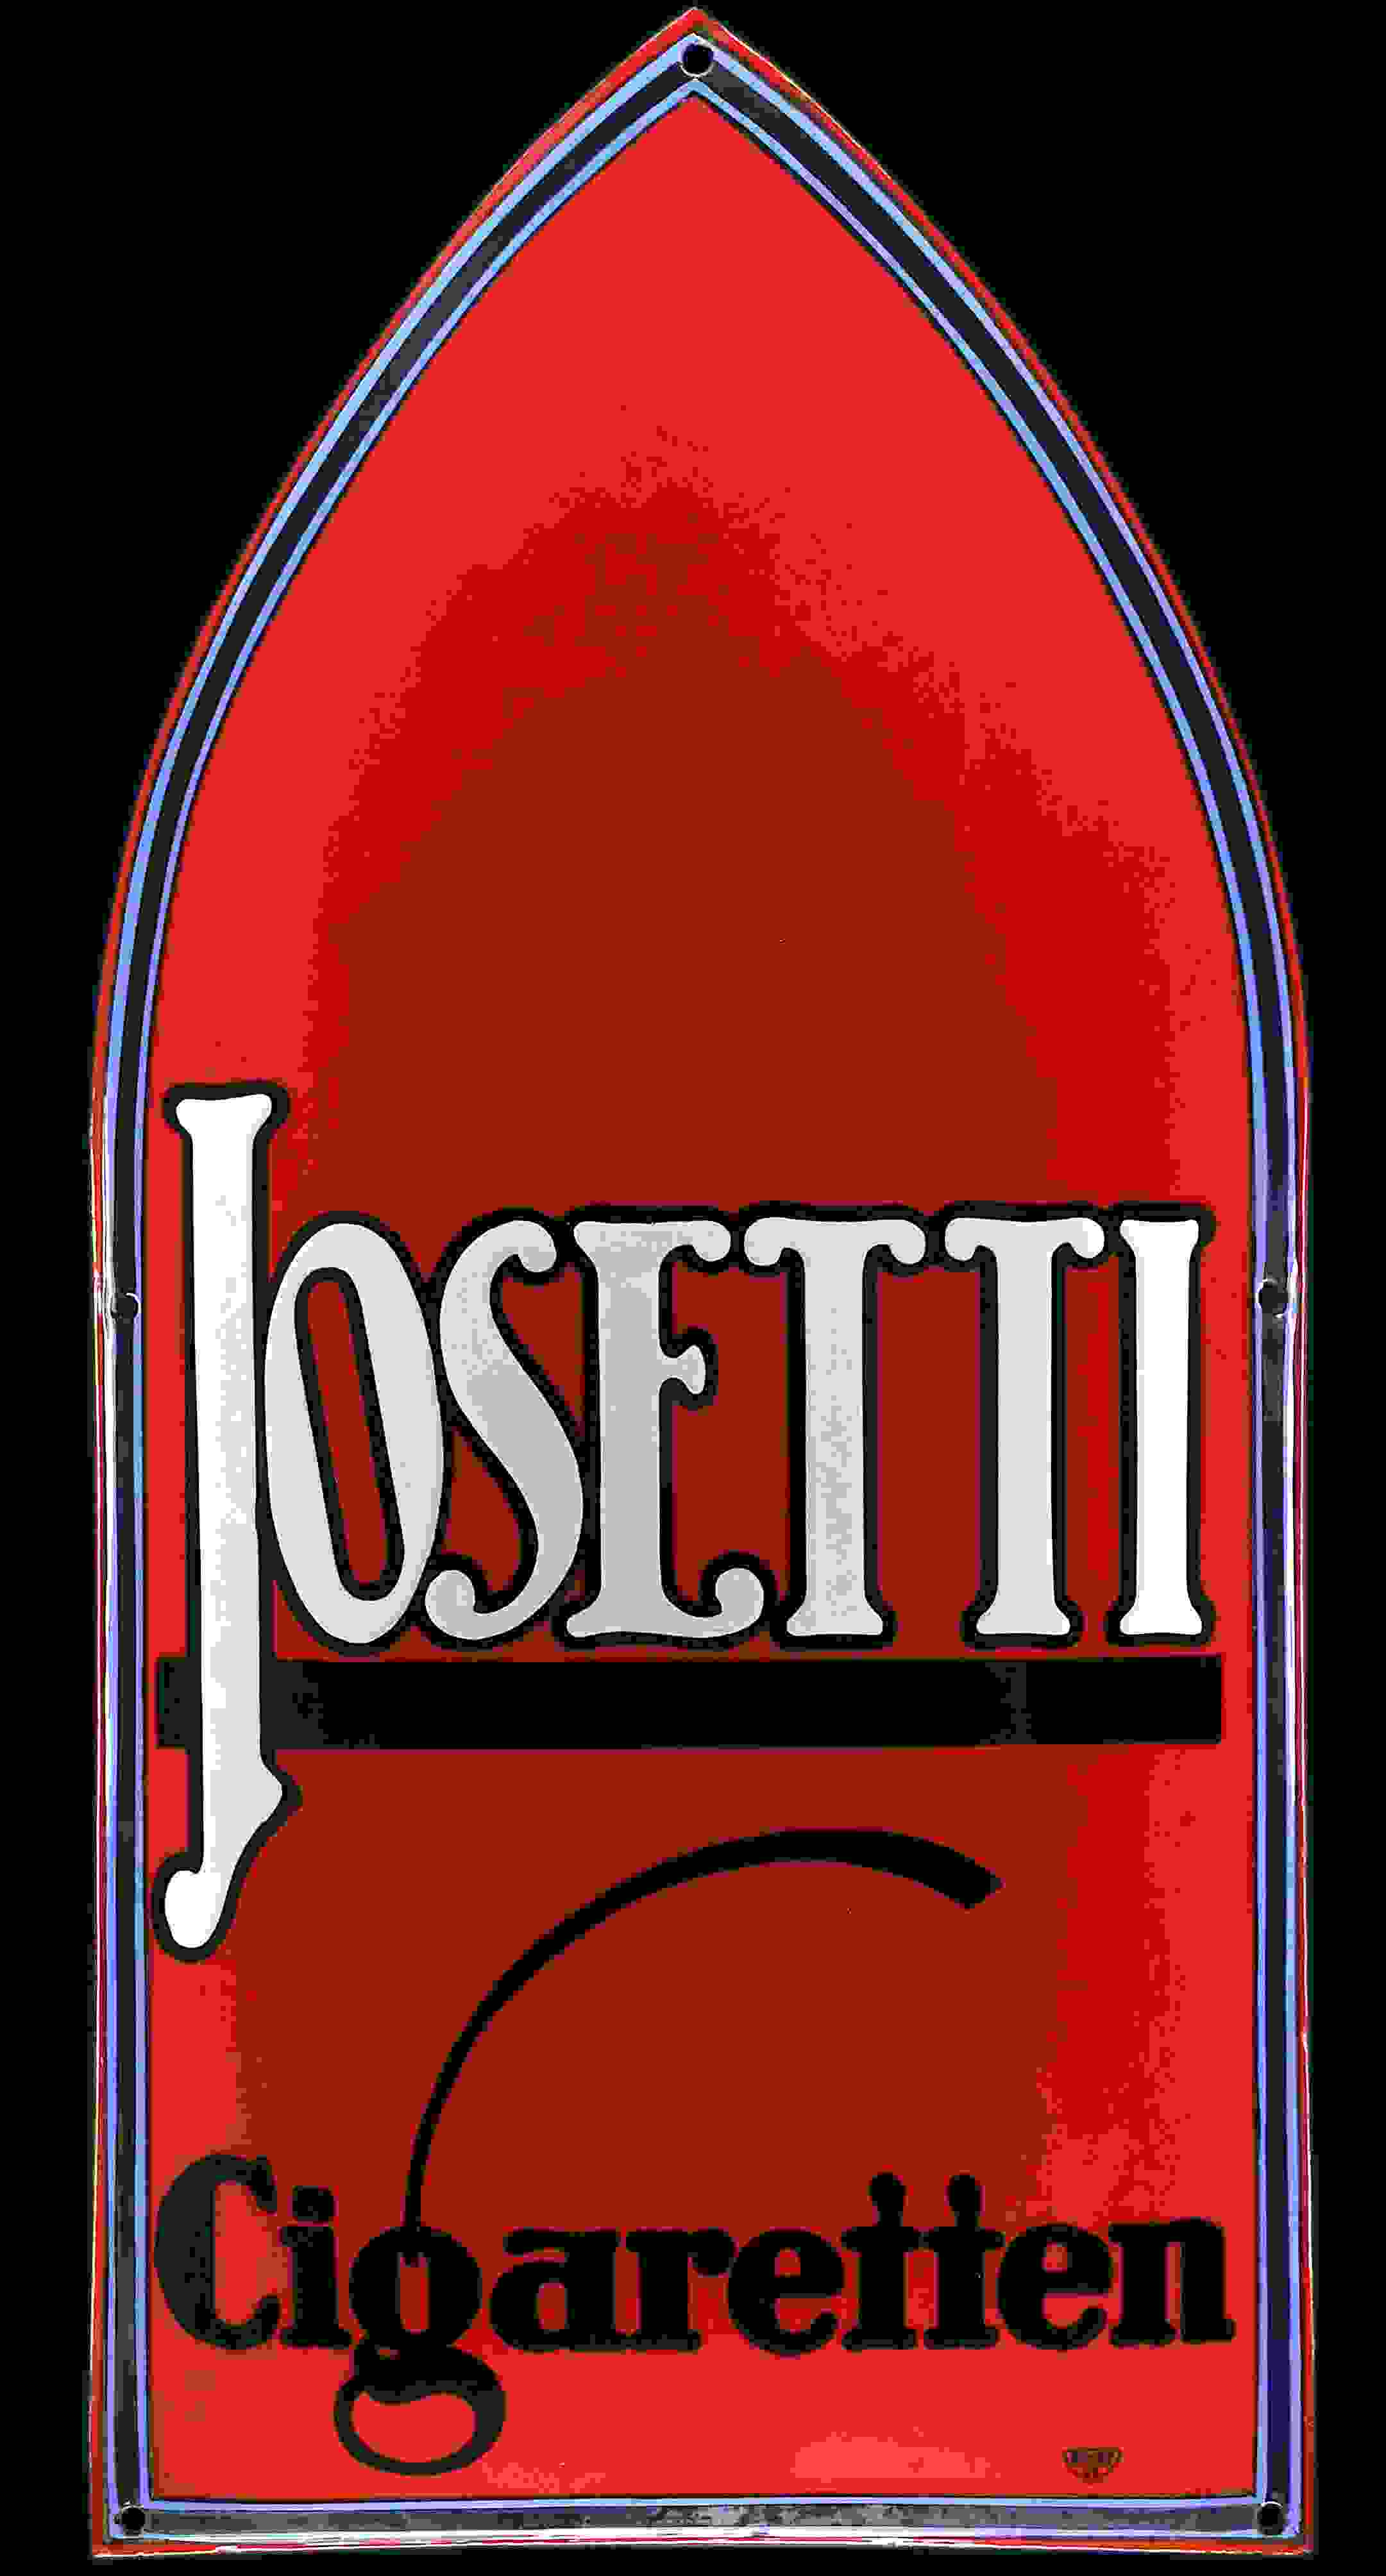 Josetti Cigaretten 